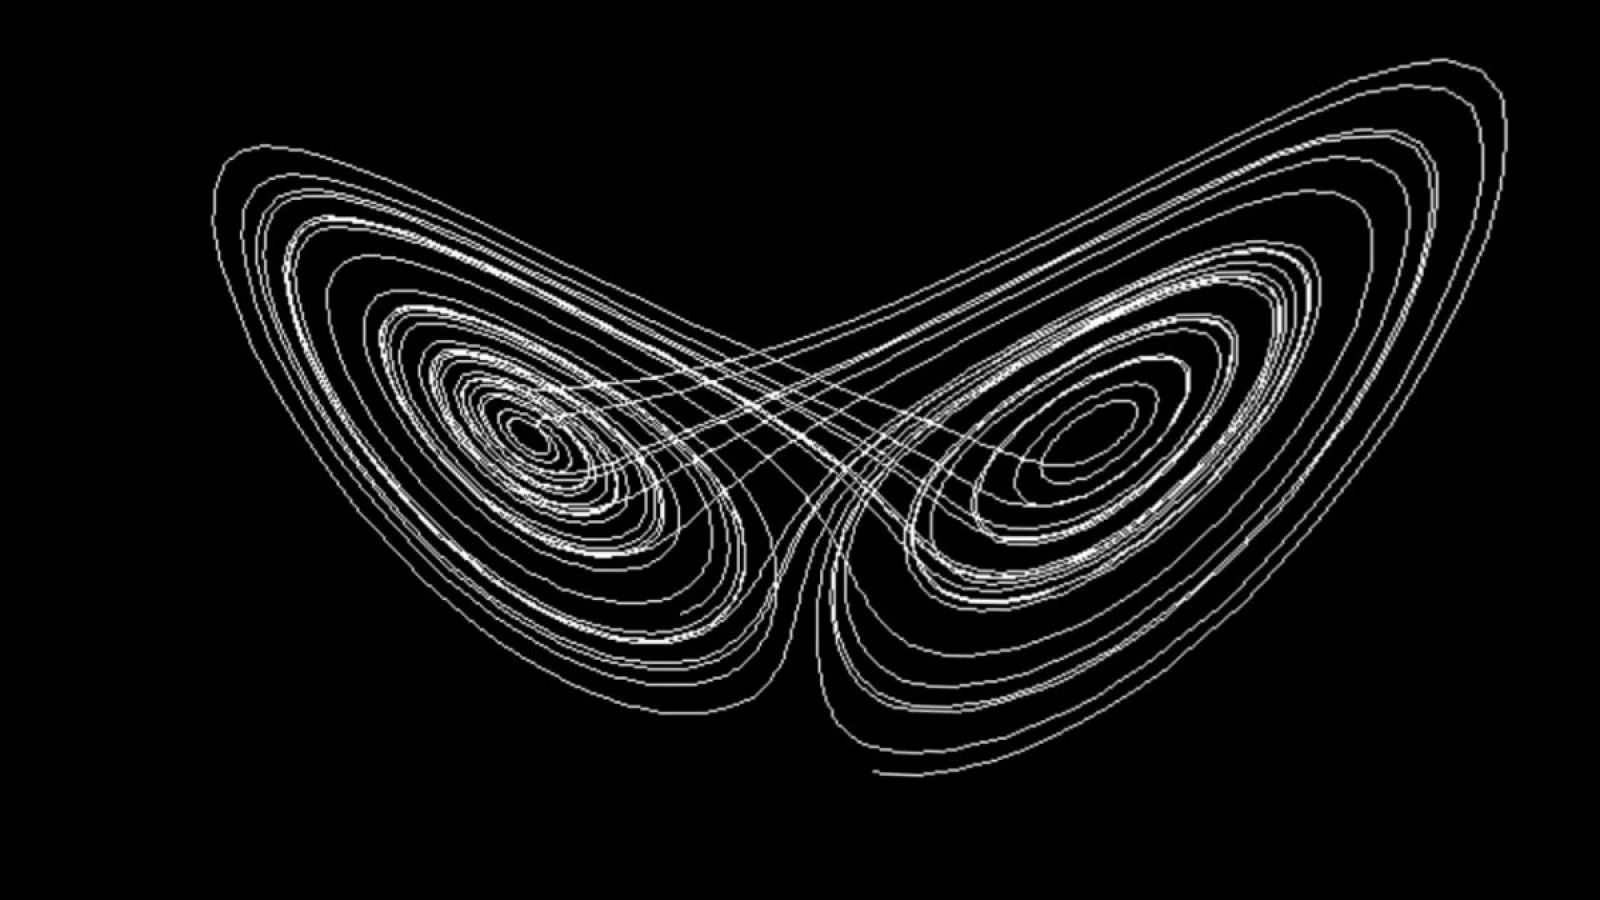 Órbita Laika - Curiosidades científicas - El efecto Mariposa